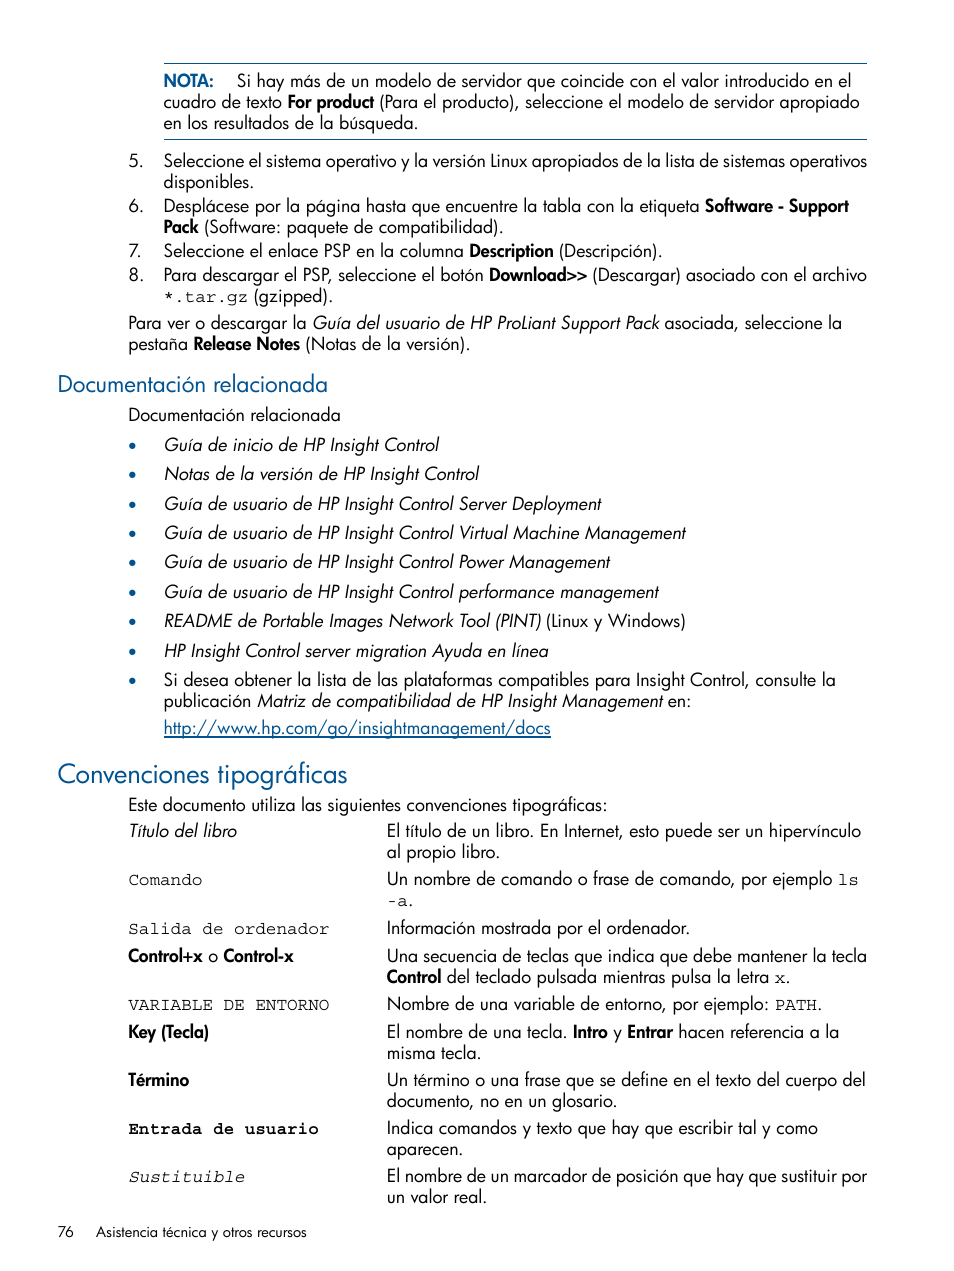 Documentación relacionada, Convenciones tipográficas | HP Software HP Virtual Connect Enterprise Manager Manual del usuario | Página 76 / 87